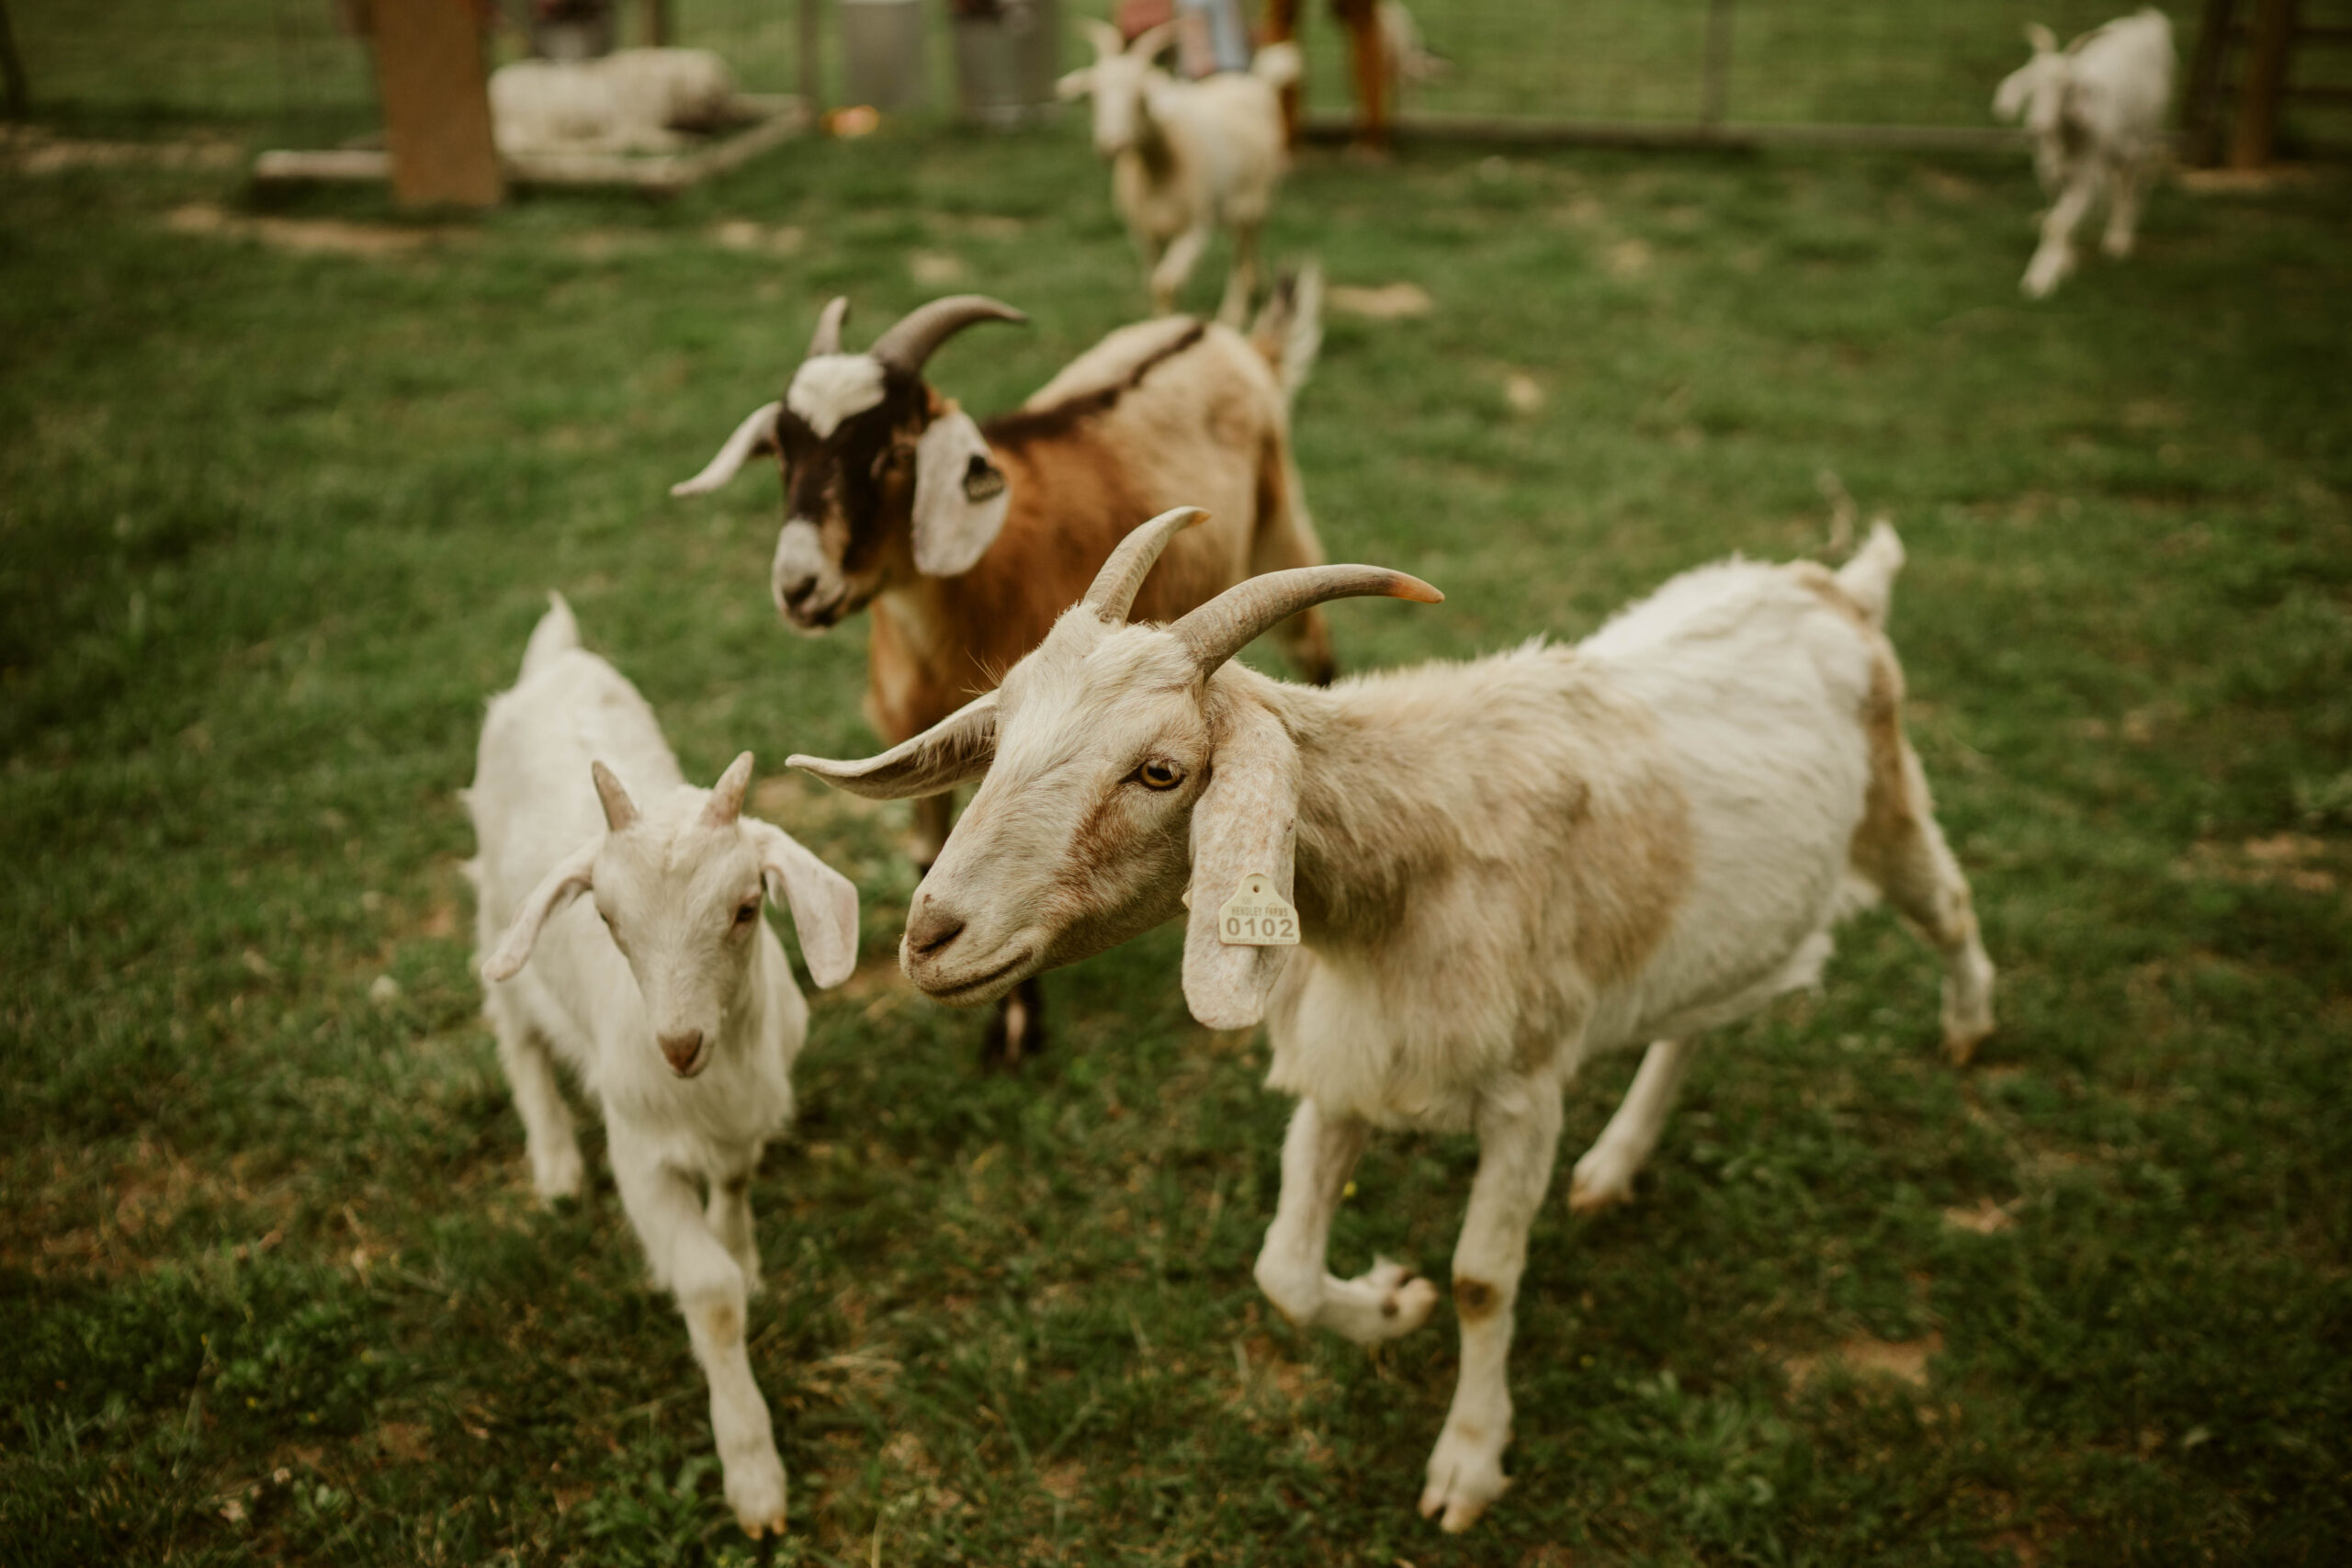 nashville maternity photographer highland cow goats farm homestead 